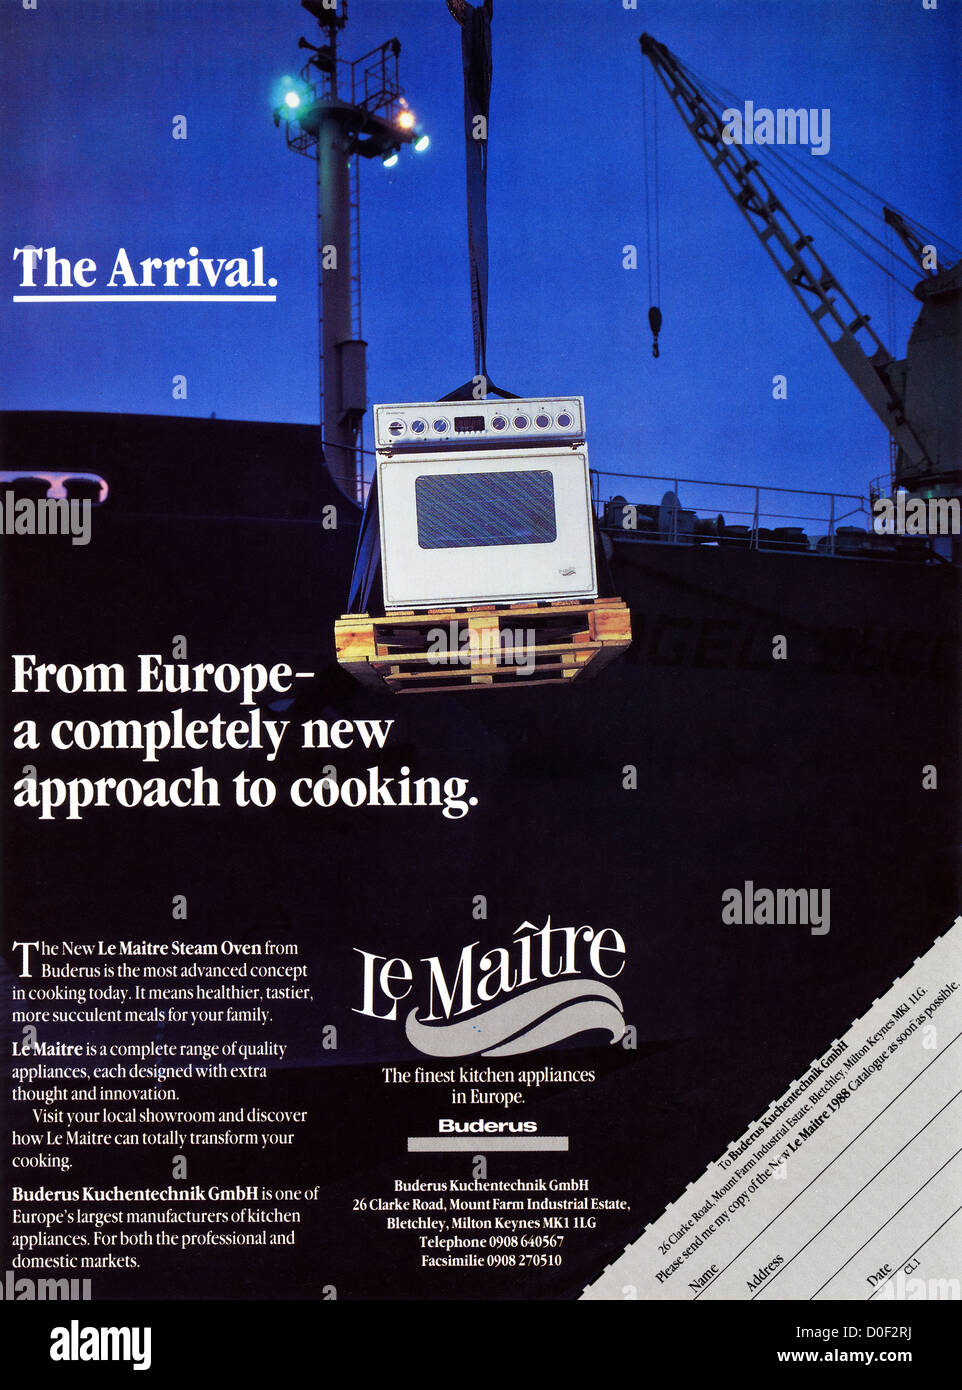 Originale degli anni ottanta per la pubblicità a mezzo stampa dal consumatore inglese pubblicità su riviste Le Maitre cucine da Buderus Foto Stock